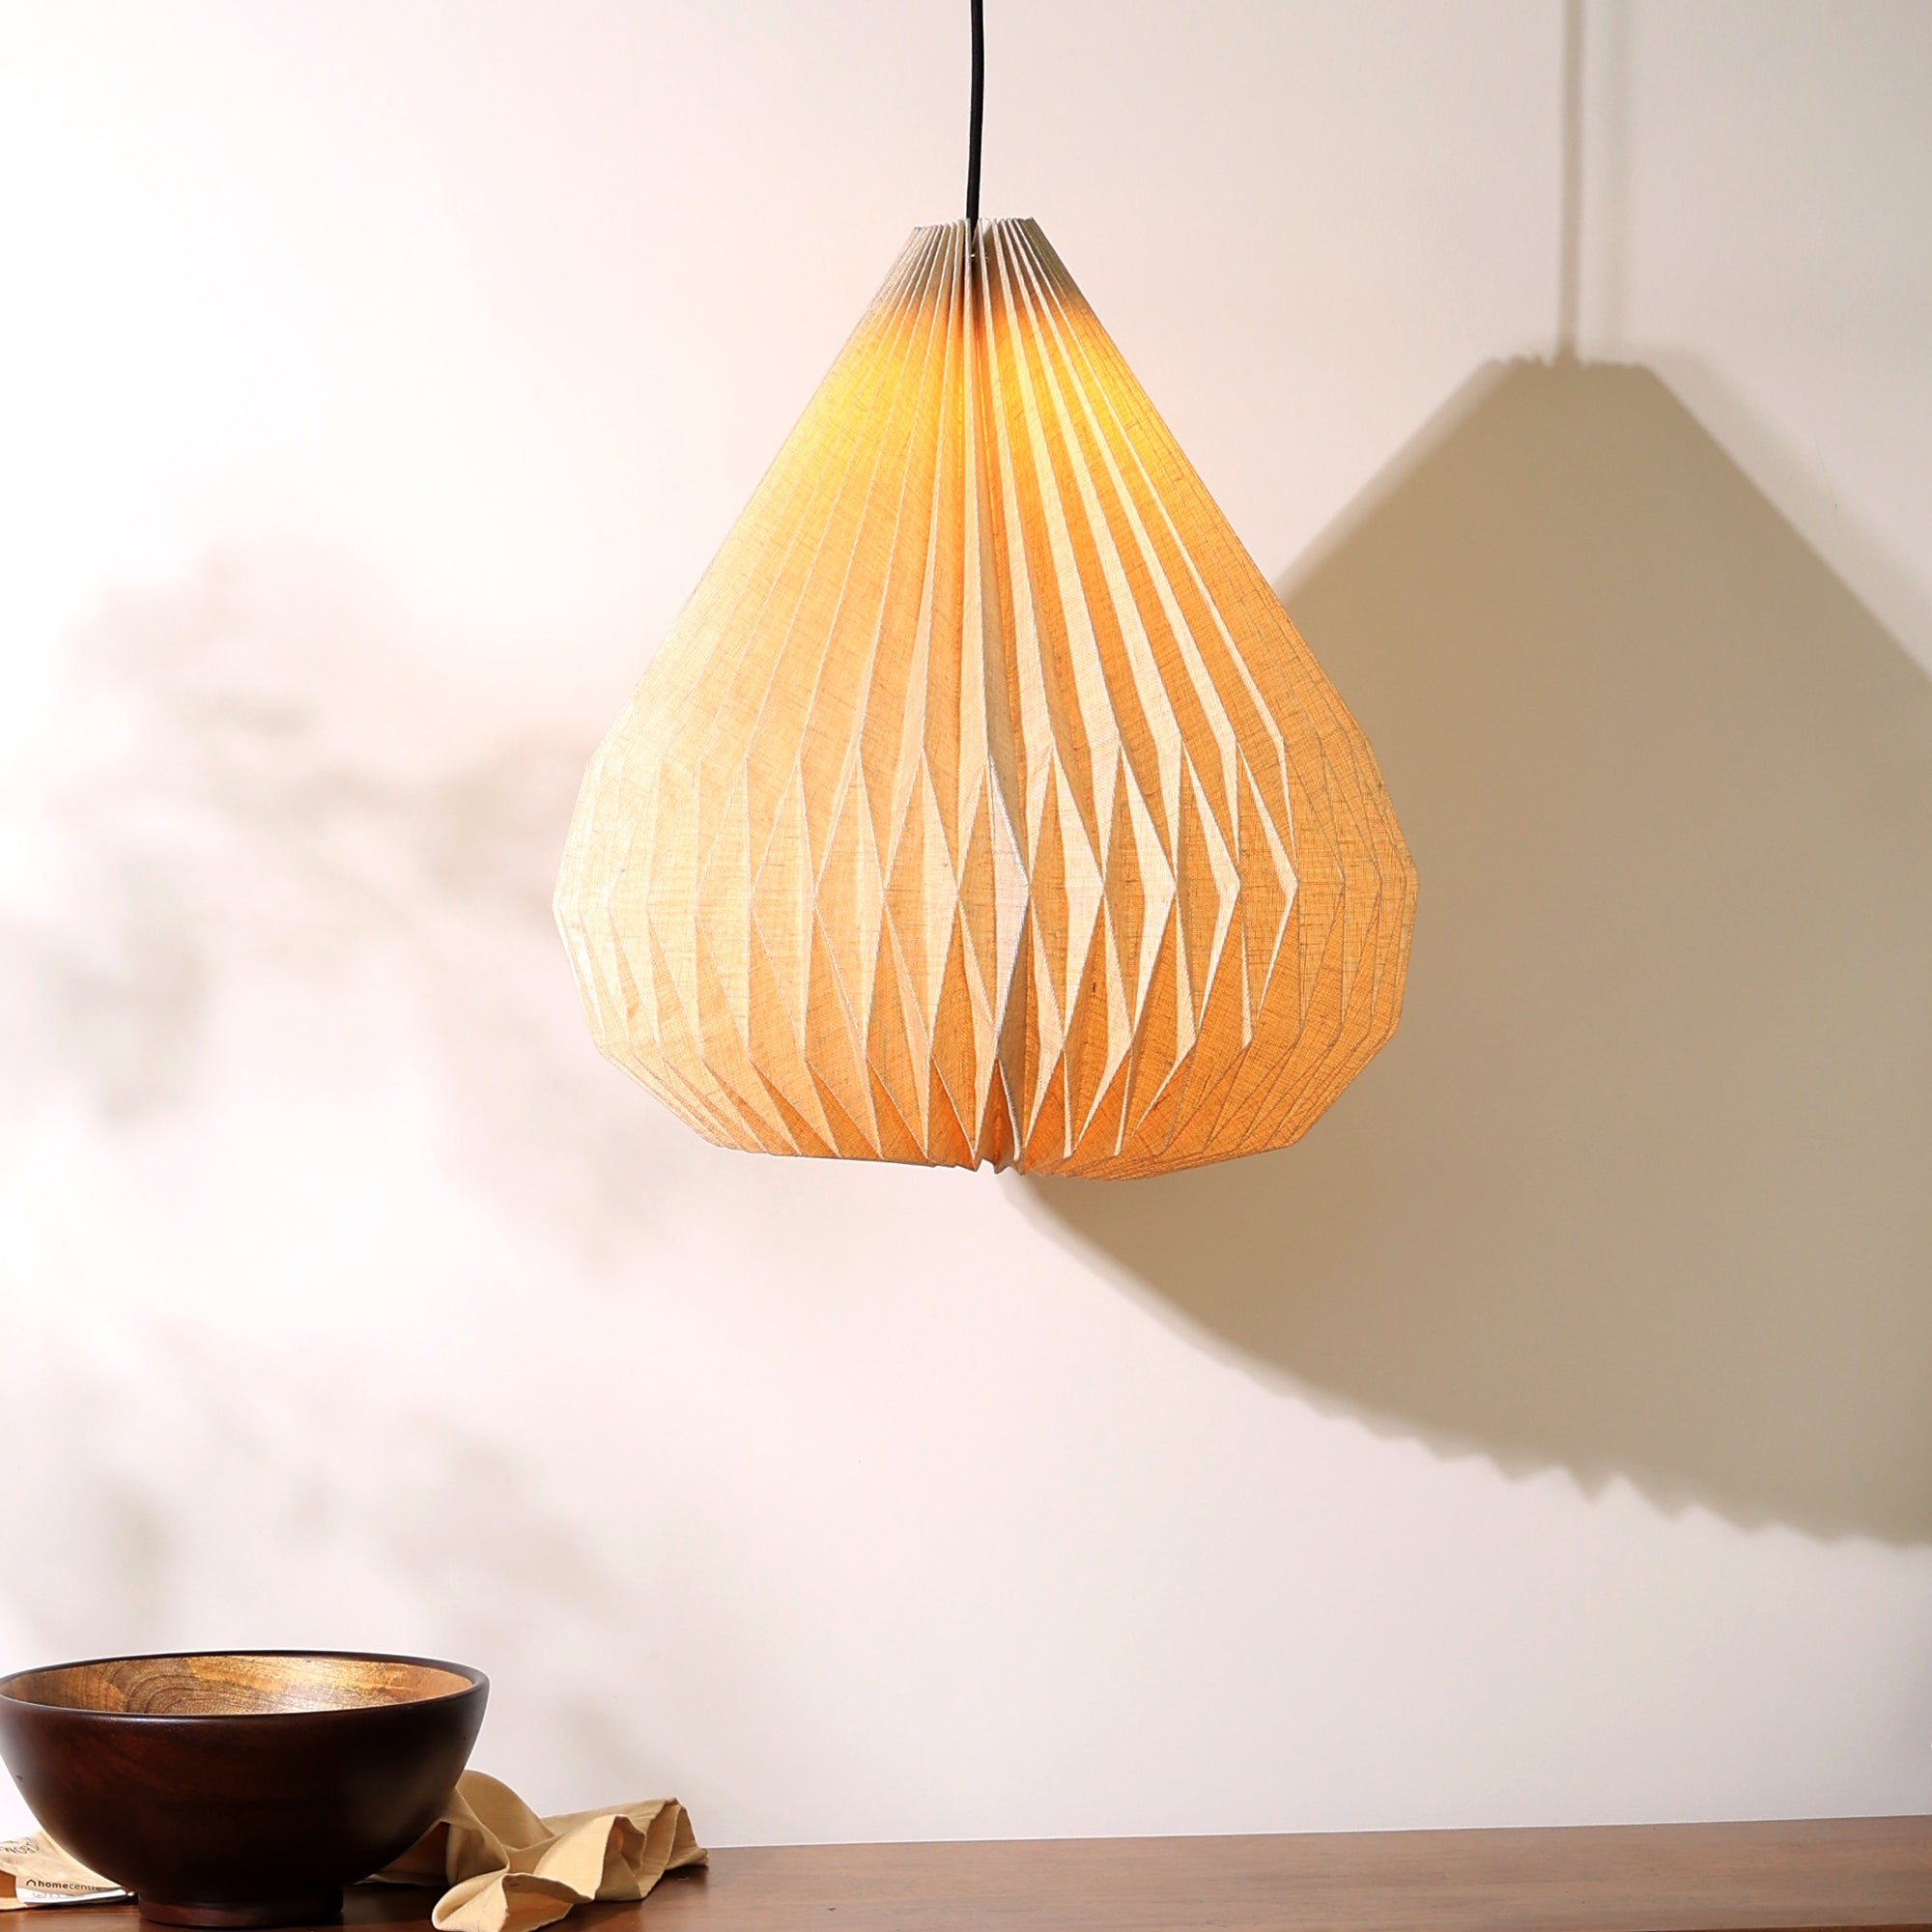 Dome Pendant Lamp - 100% European Linen Pendant Light, Elegant Dome Shape, Modern Design Hanging Light